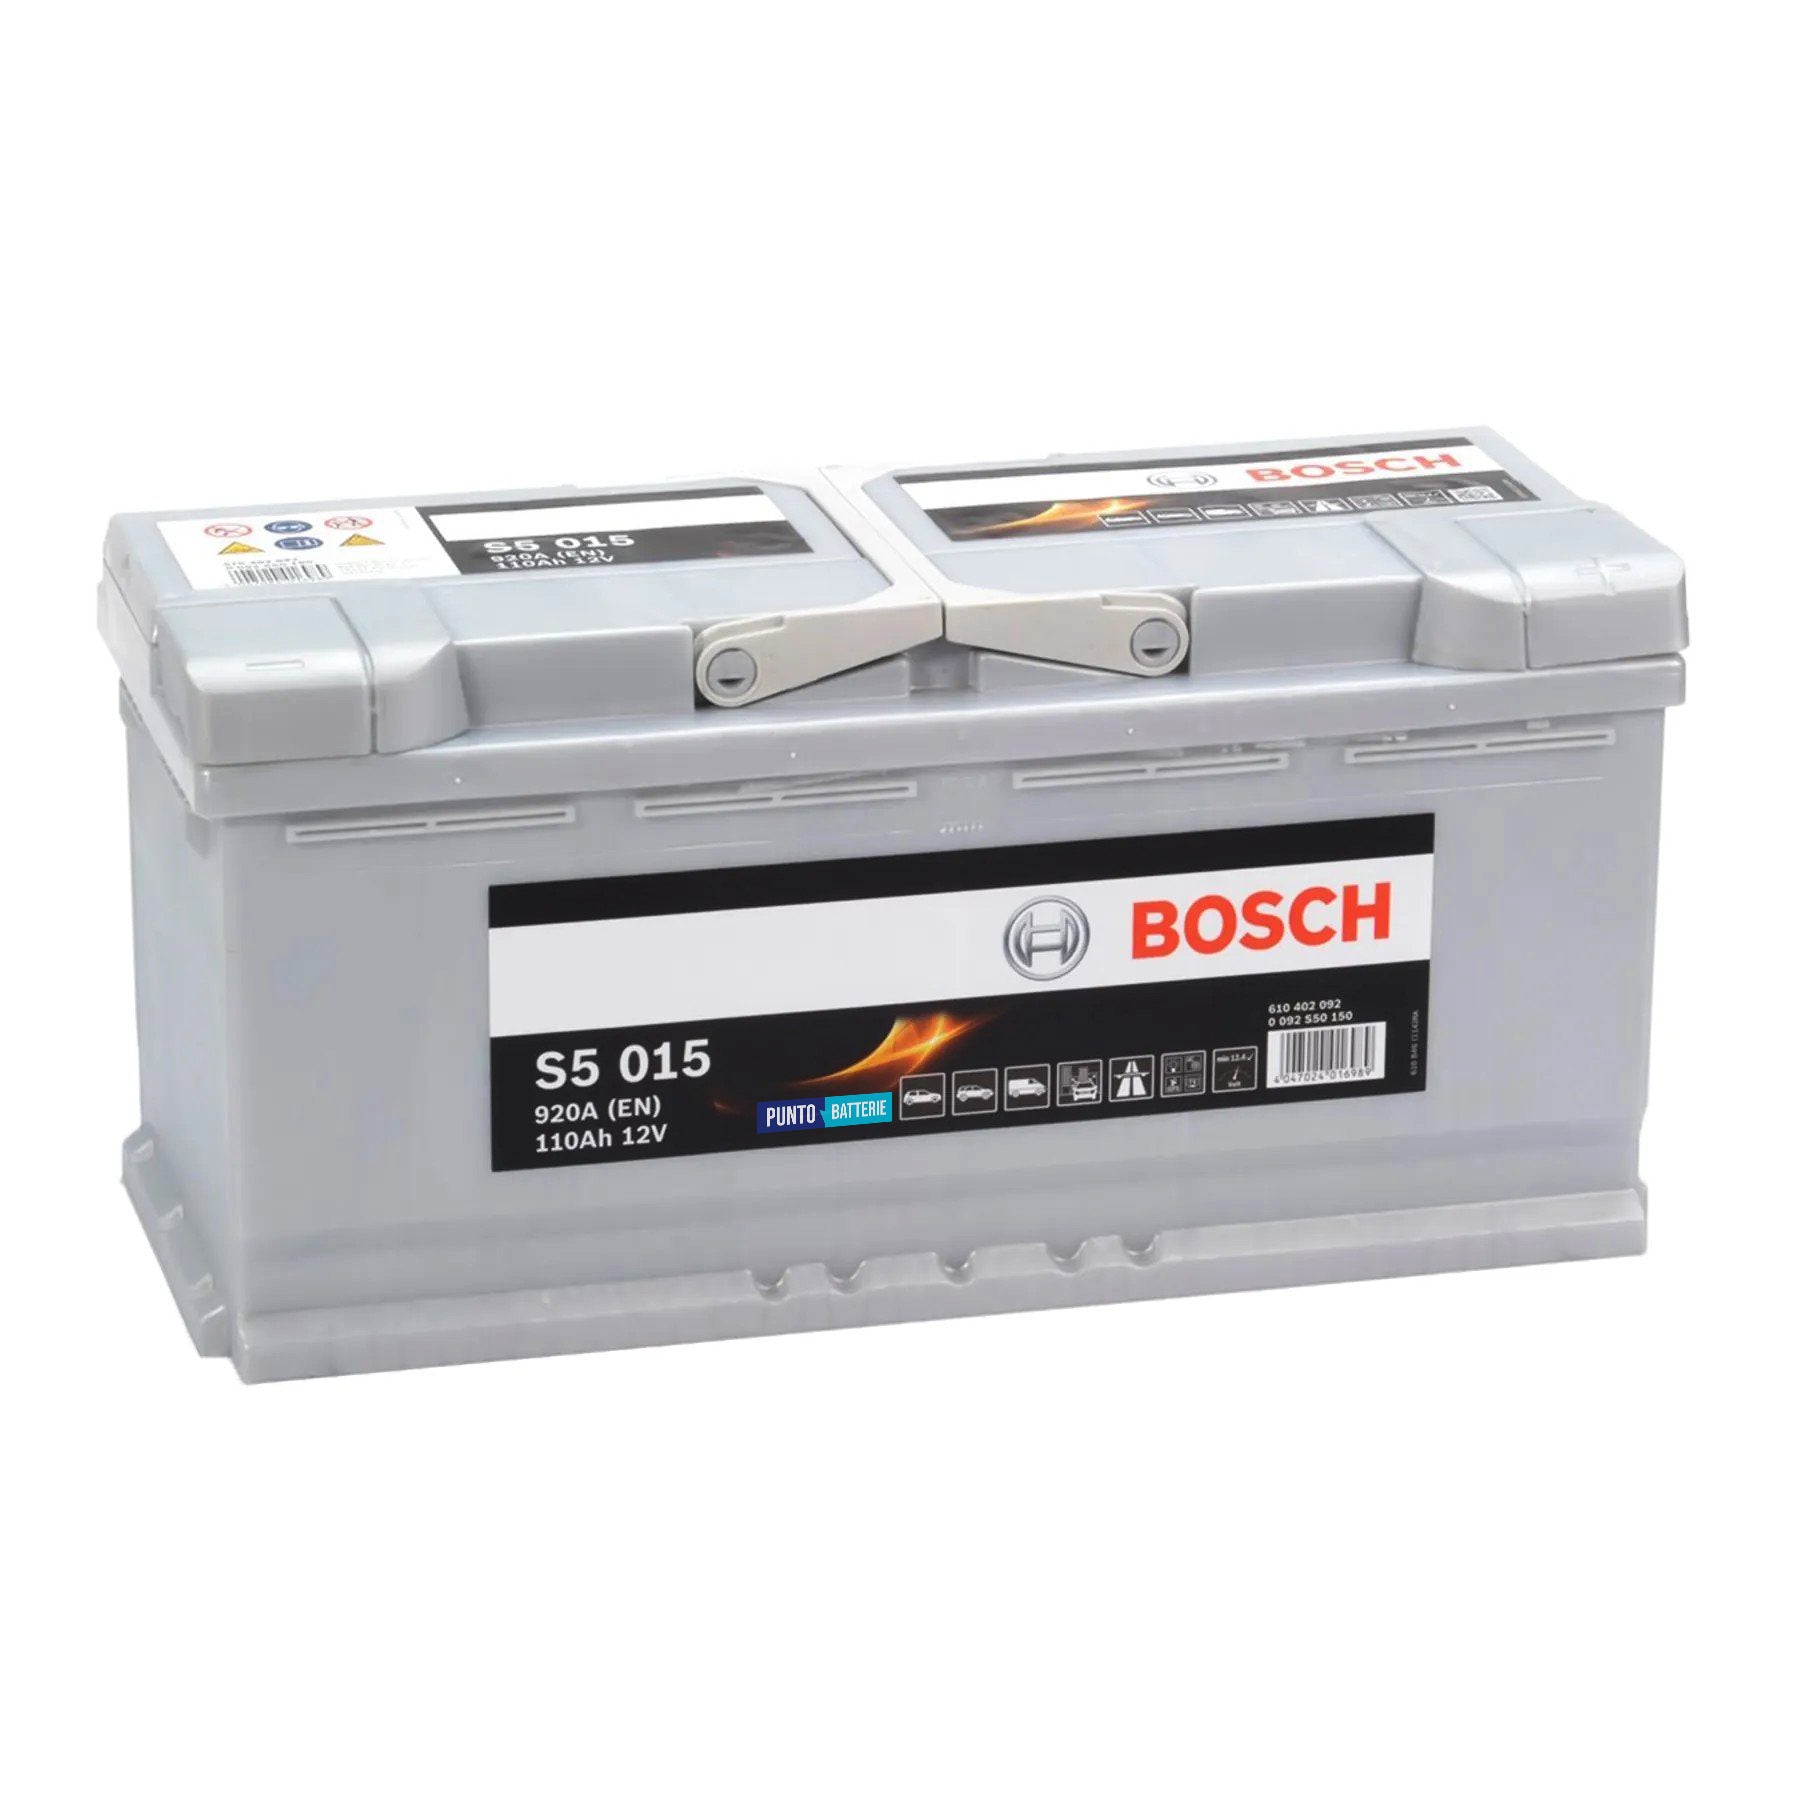 Batteria originale Bosch S5 S5 015, dimensioni 393 x 175 x 190, polo positivo a destra, 12 volt, 110 amperora, 920 ampere. Batteria per auto e veicoli leggeri.